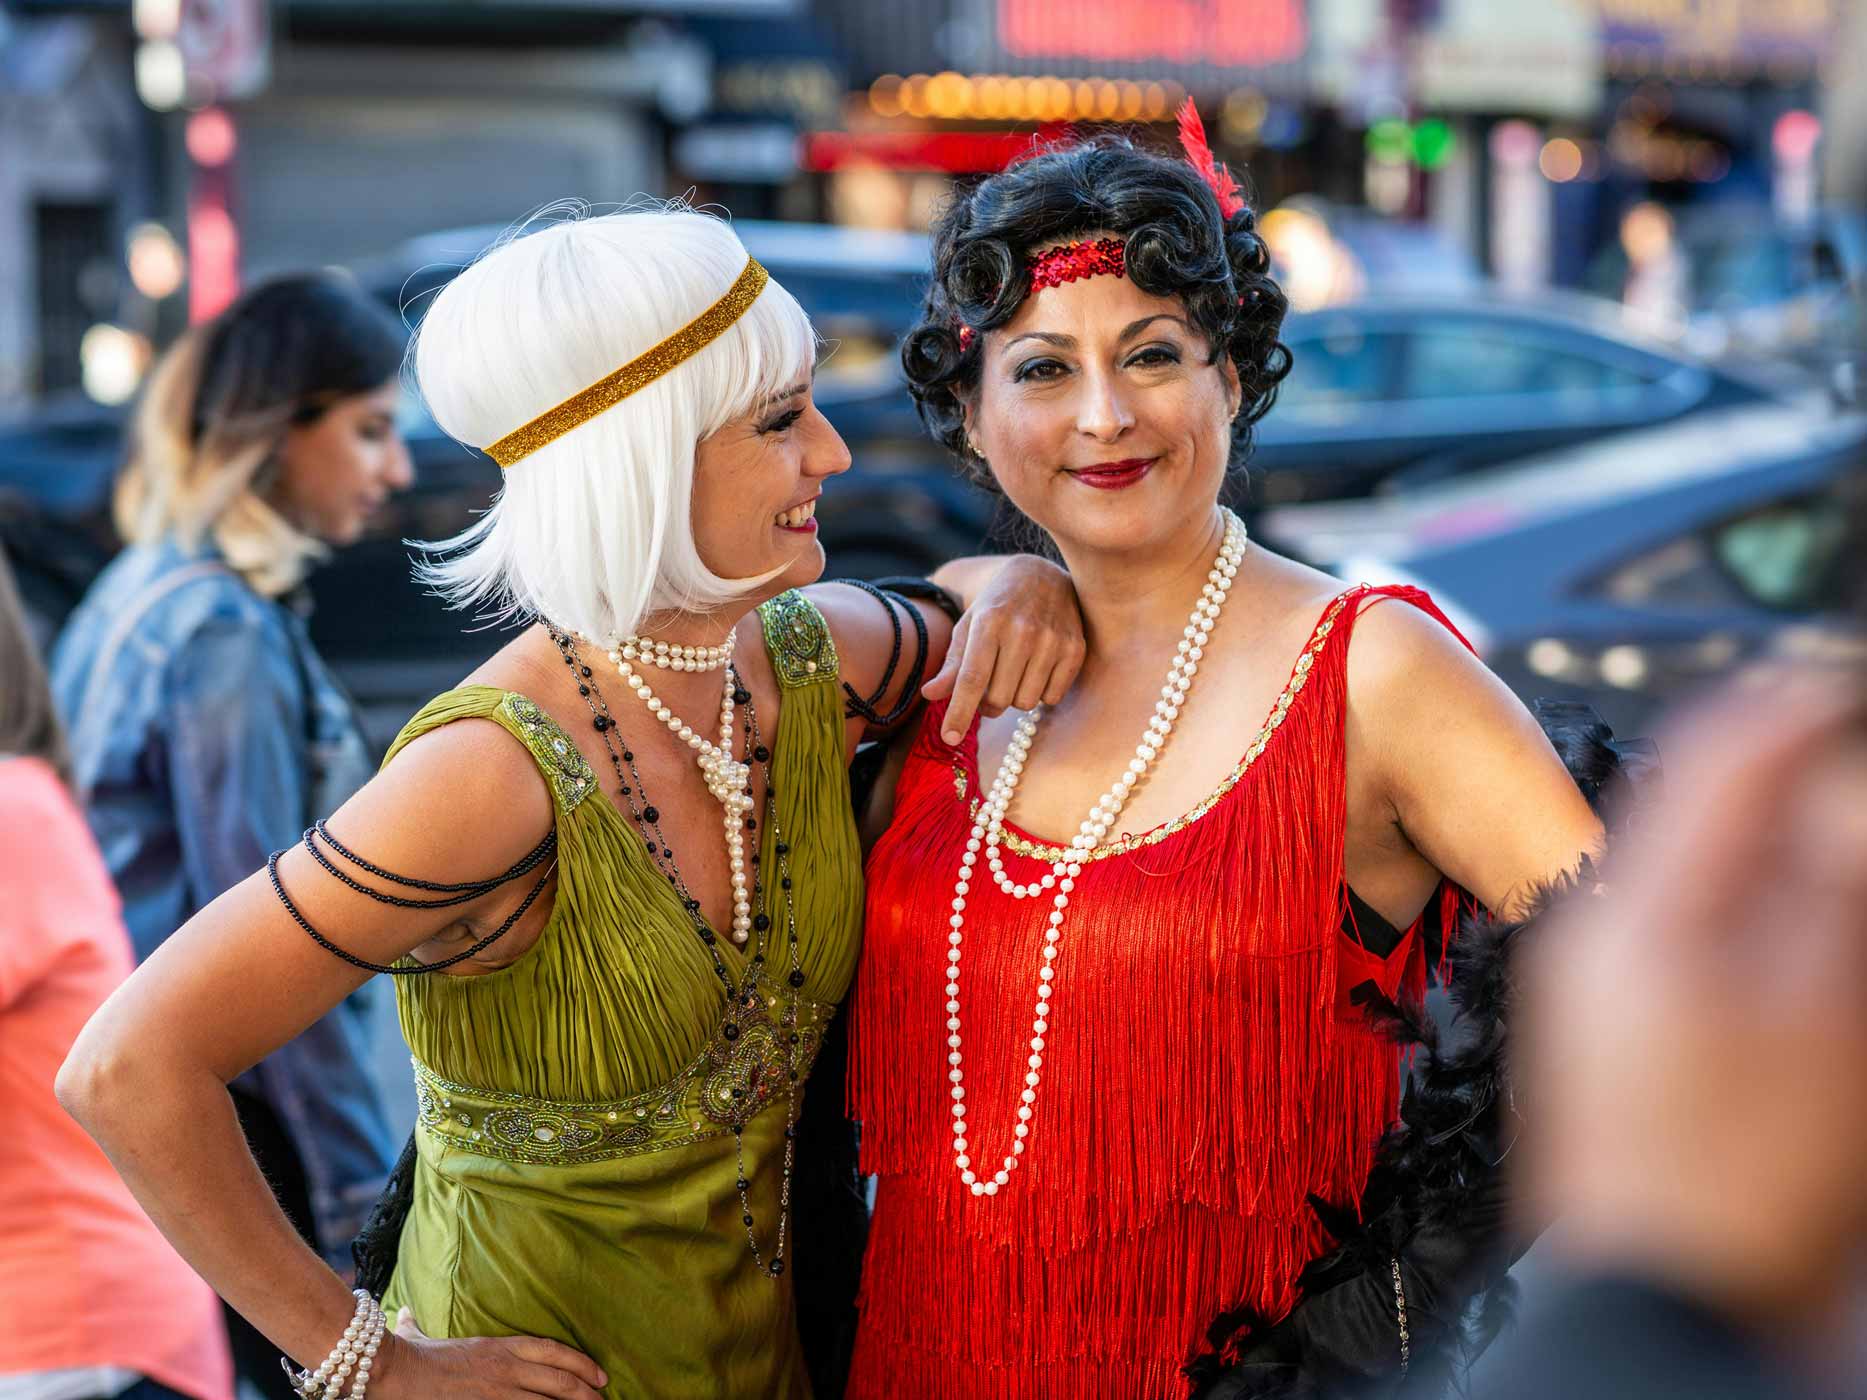 Zwei Frauen sind in bunten Kleidern im Look der 20er Jahre verkleidet und lachen